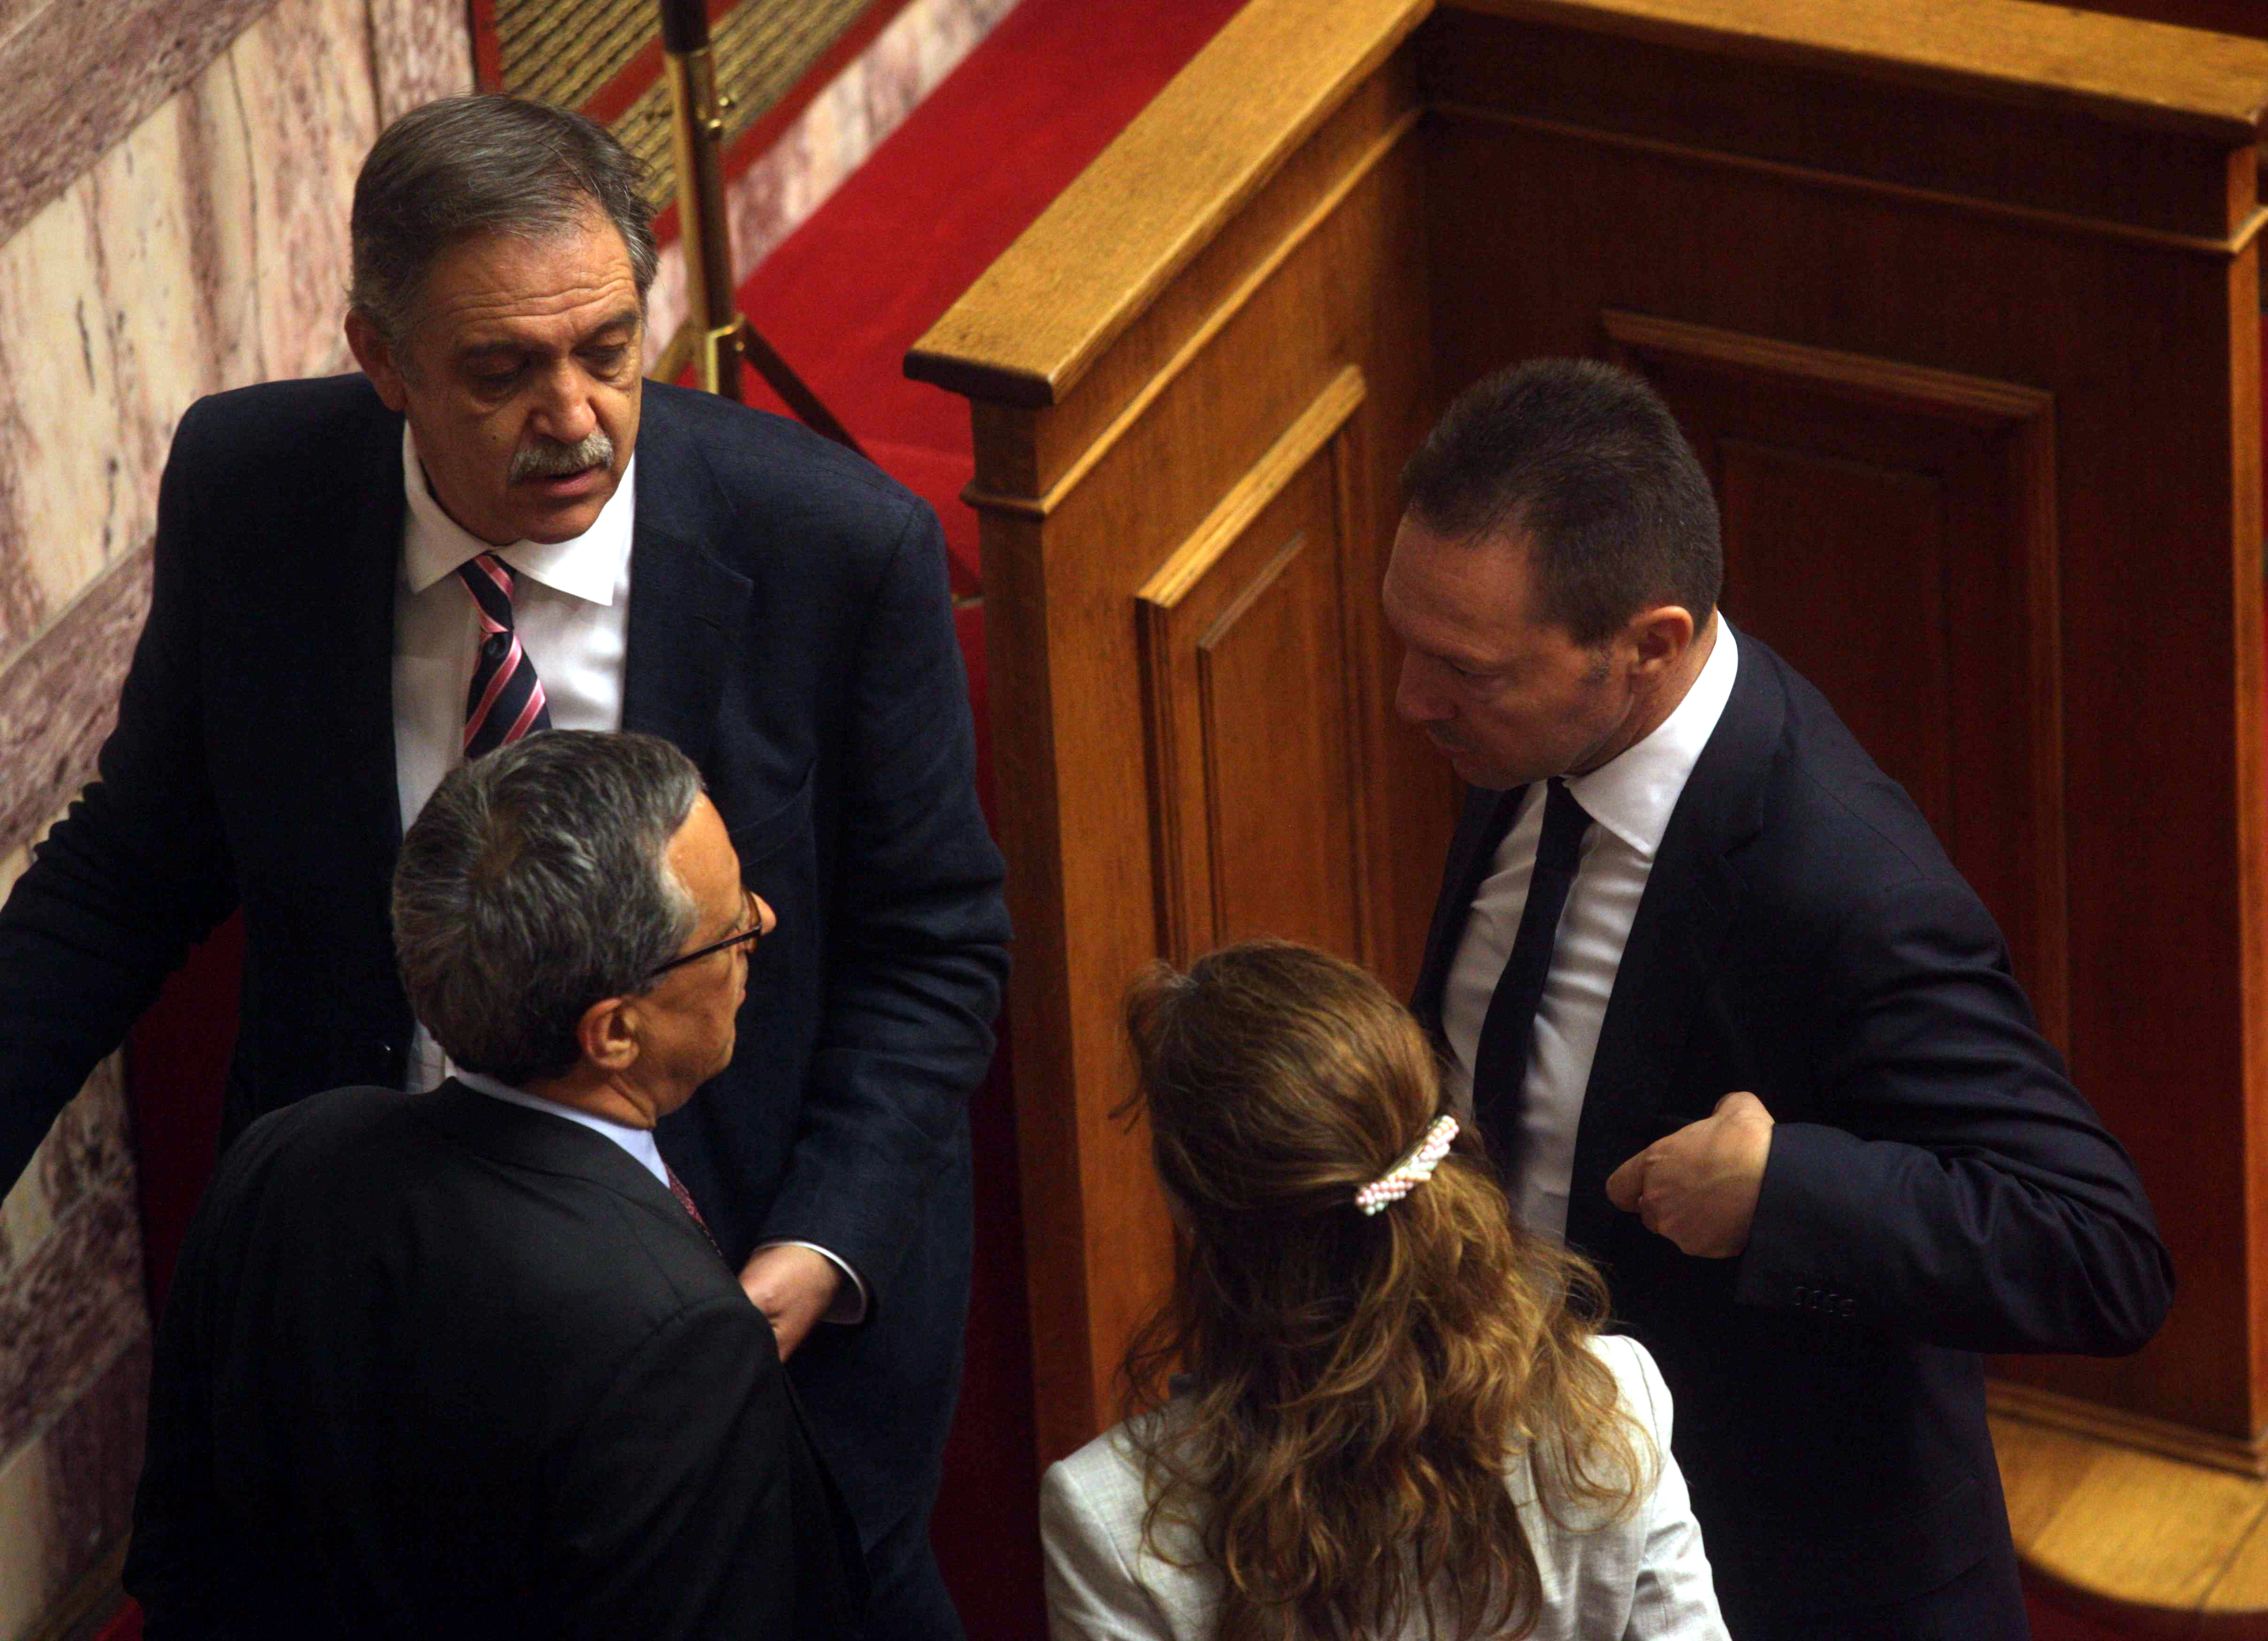 ΦΩΤΟ EUROKINISSI - Ο Πάρις Κουκουλόπουλος στη Βουλή με τον κ. Στουρνάρα και τον κ. Μπαλτάκο